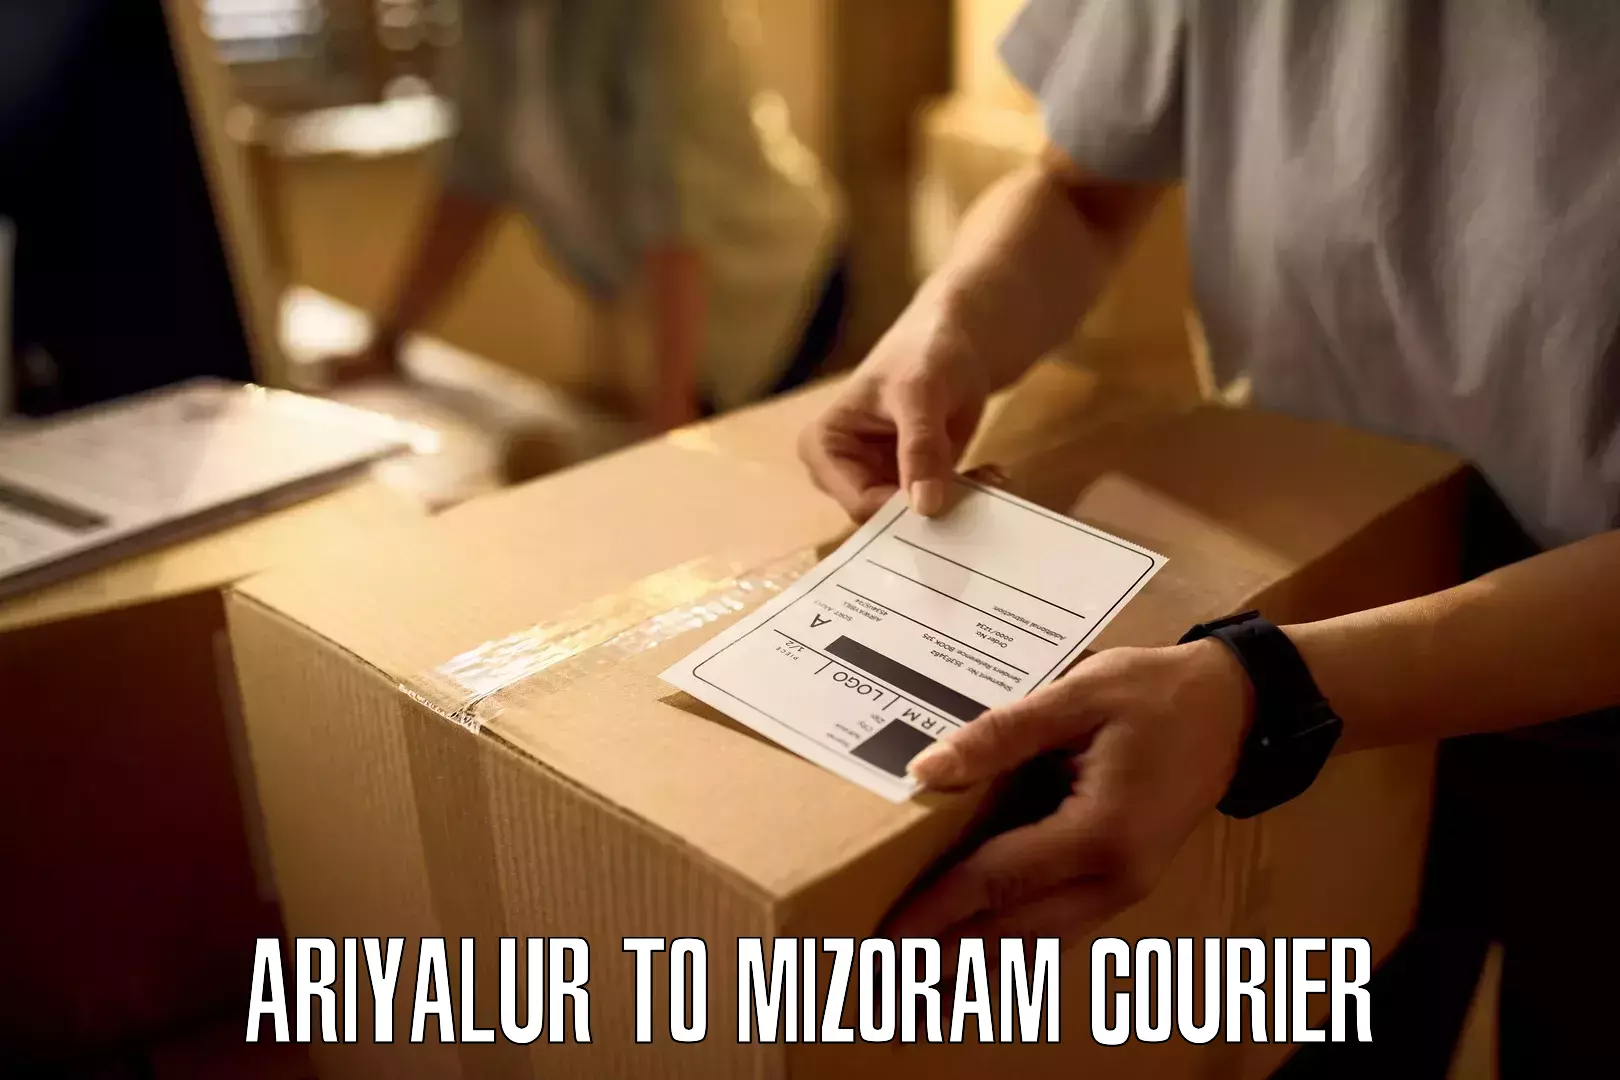 Customer-centric shipping Ariyalur to Darlawn